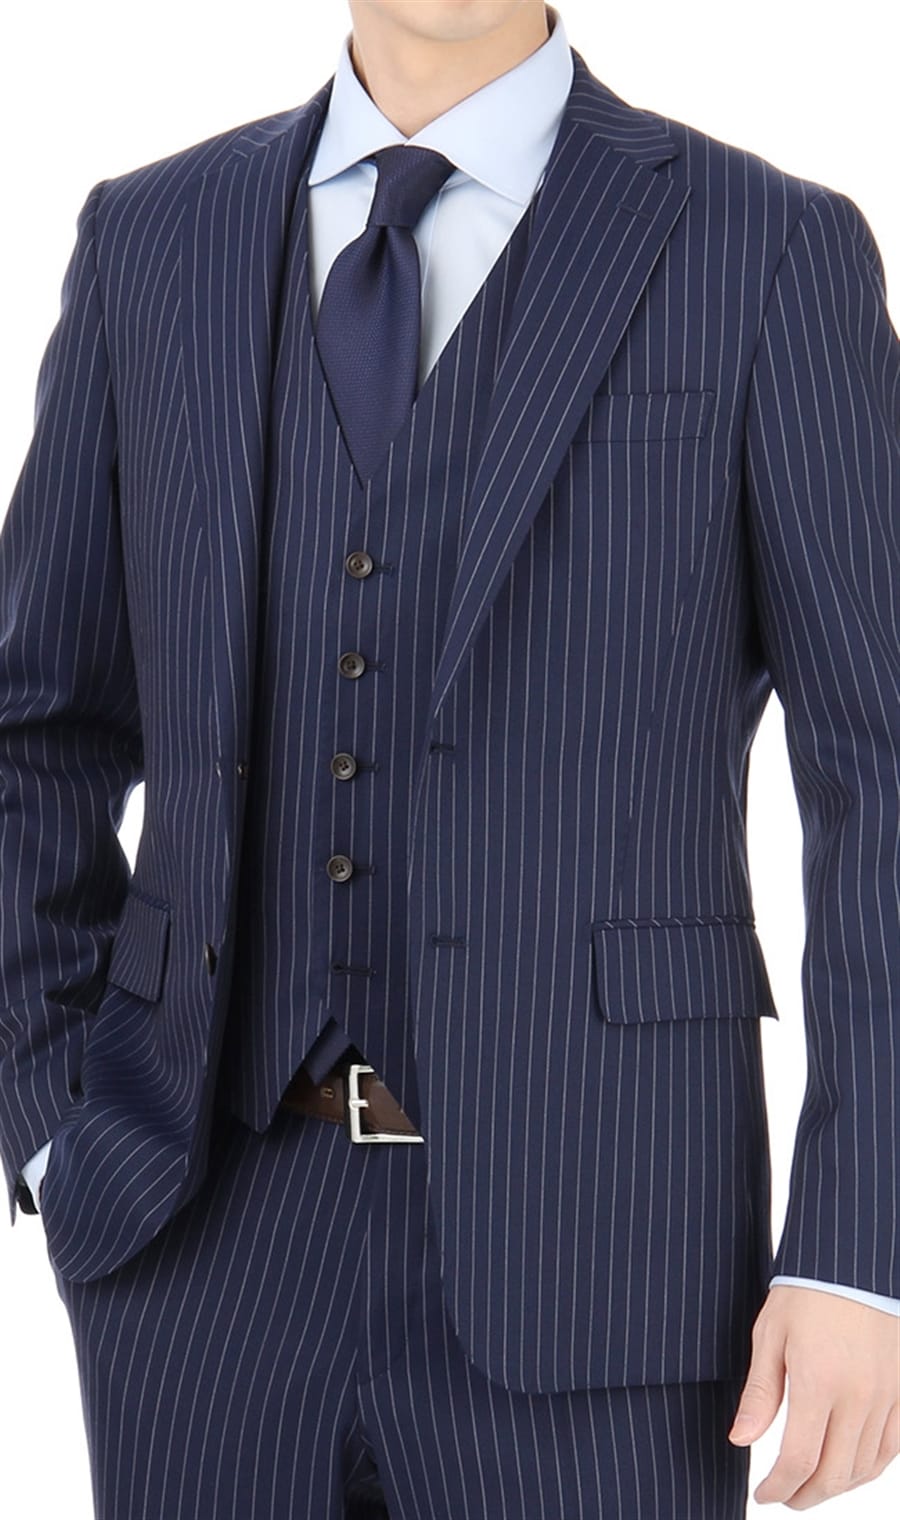 洋服の青山 スリーシーズン用 スーツ スリーピース シングルスタイリッシュフォーマル ブラック系 メンズ